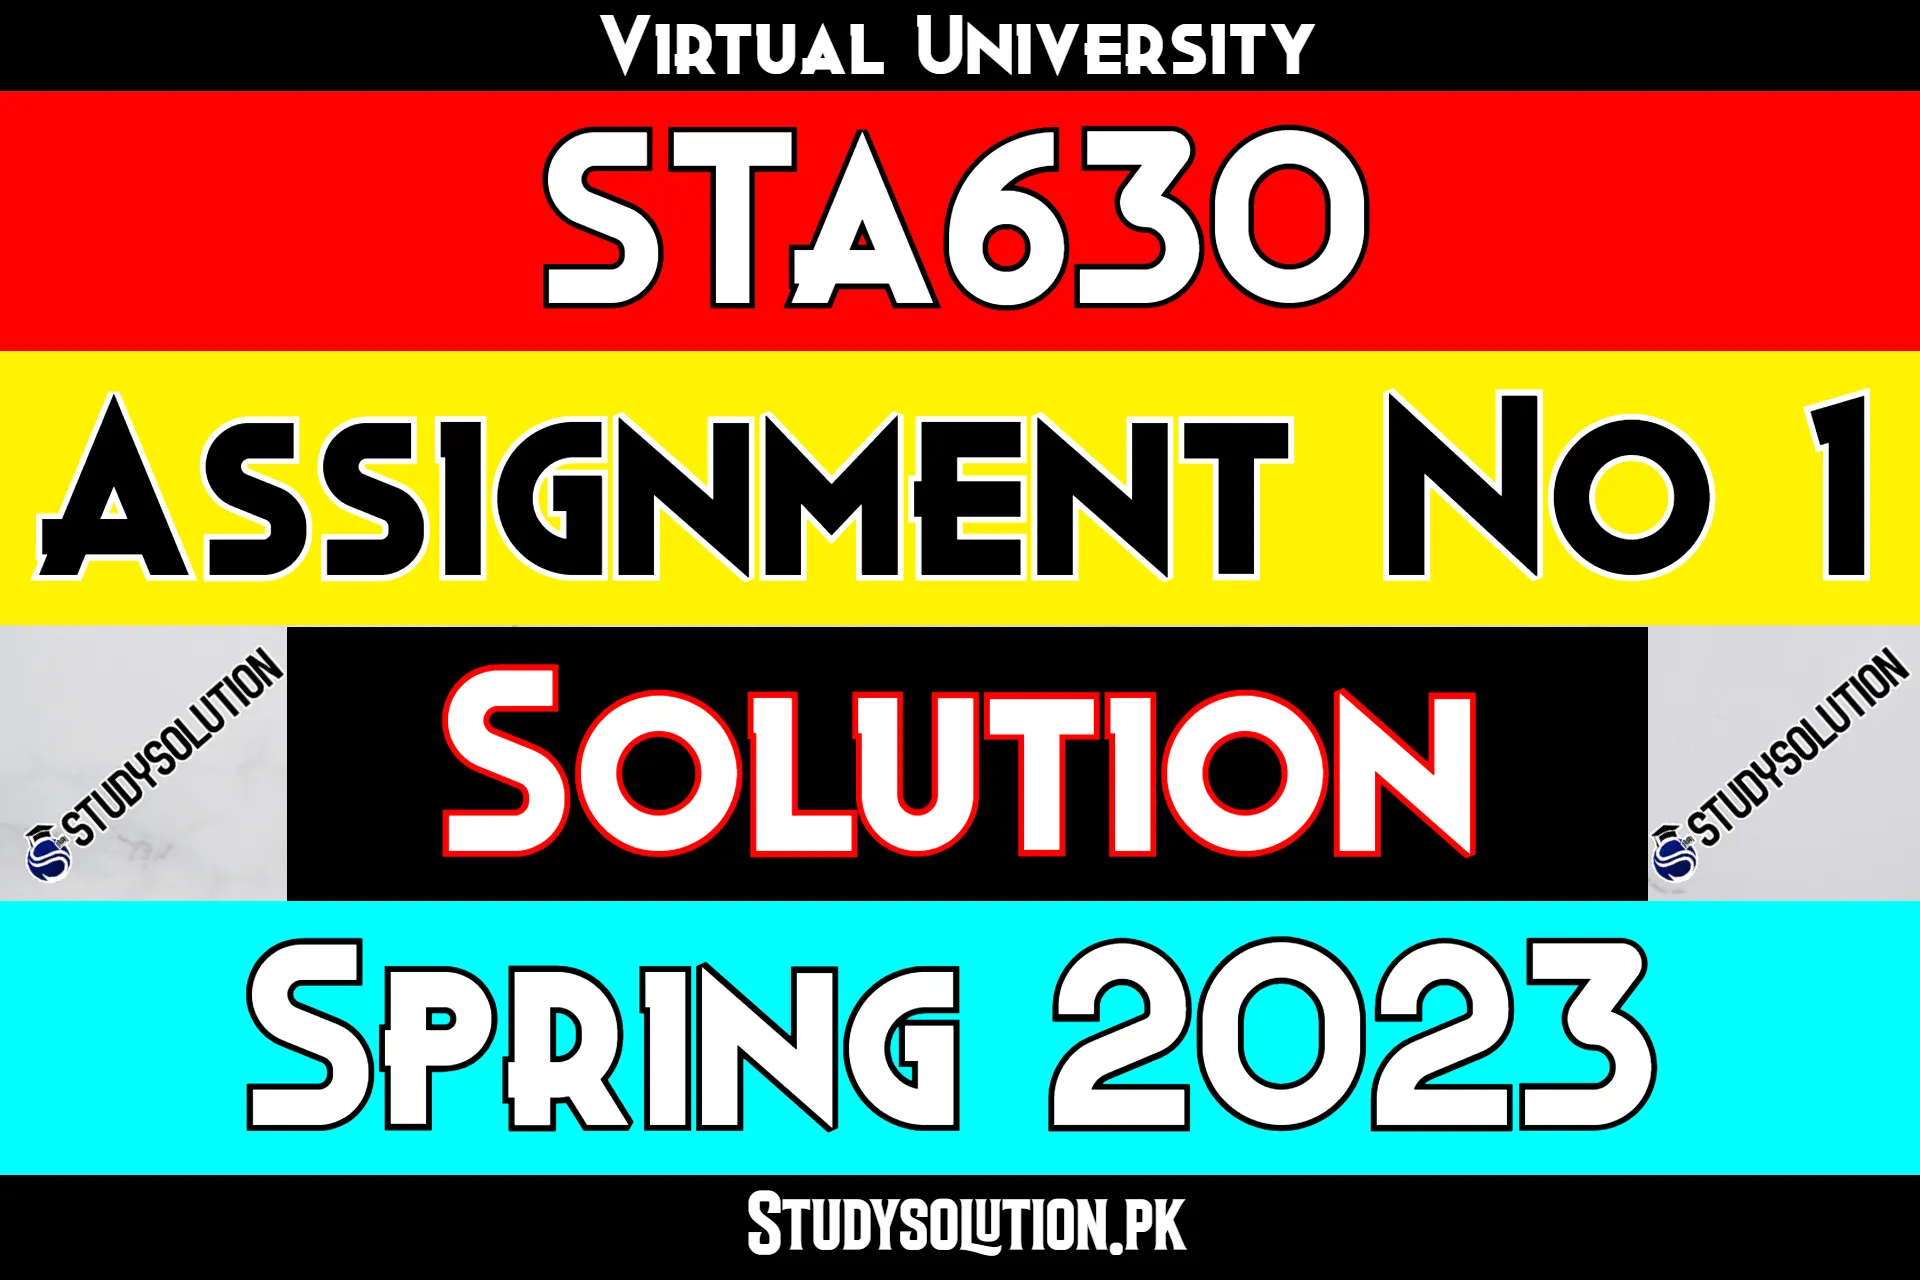 STA630 Assignment No 1 Solution Spring 2023